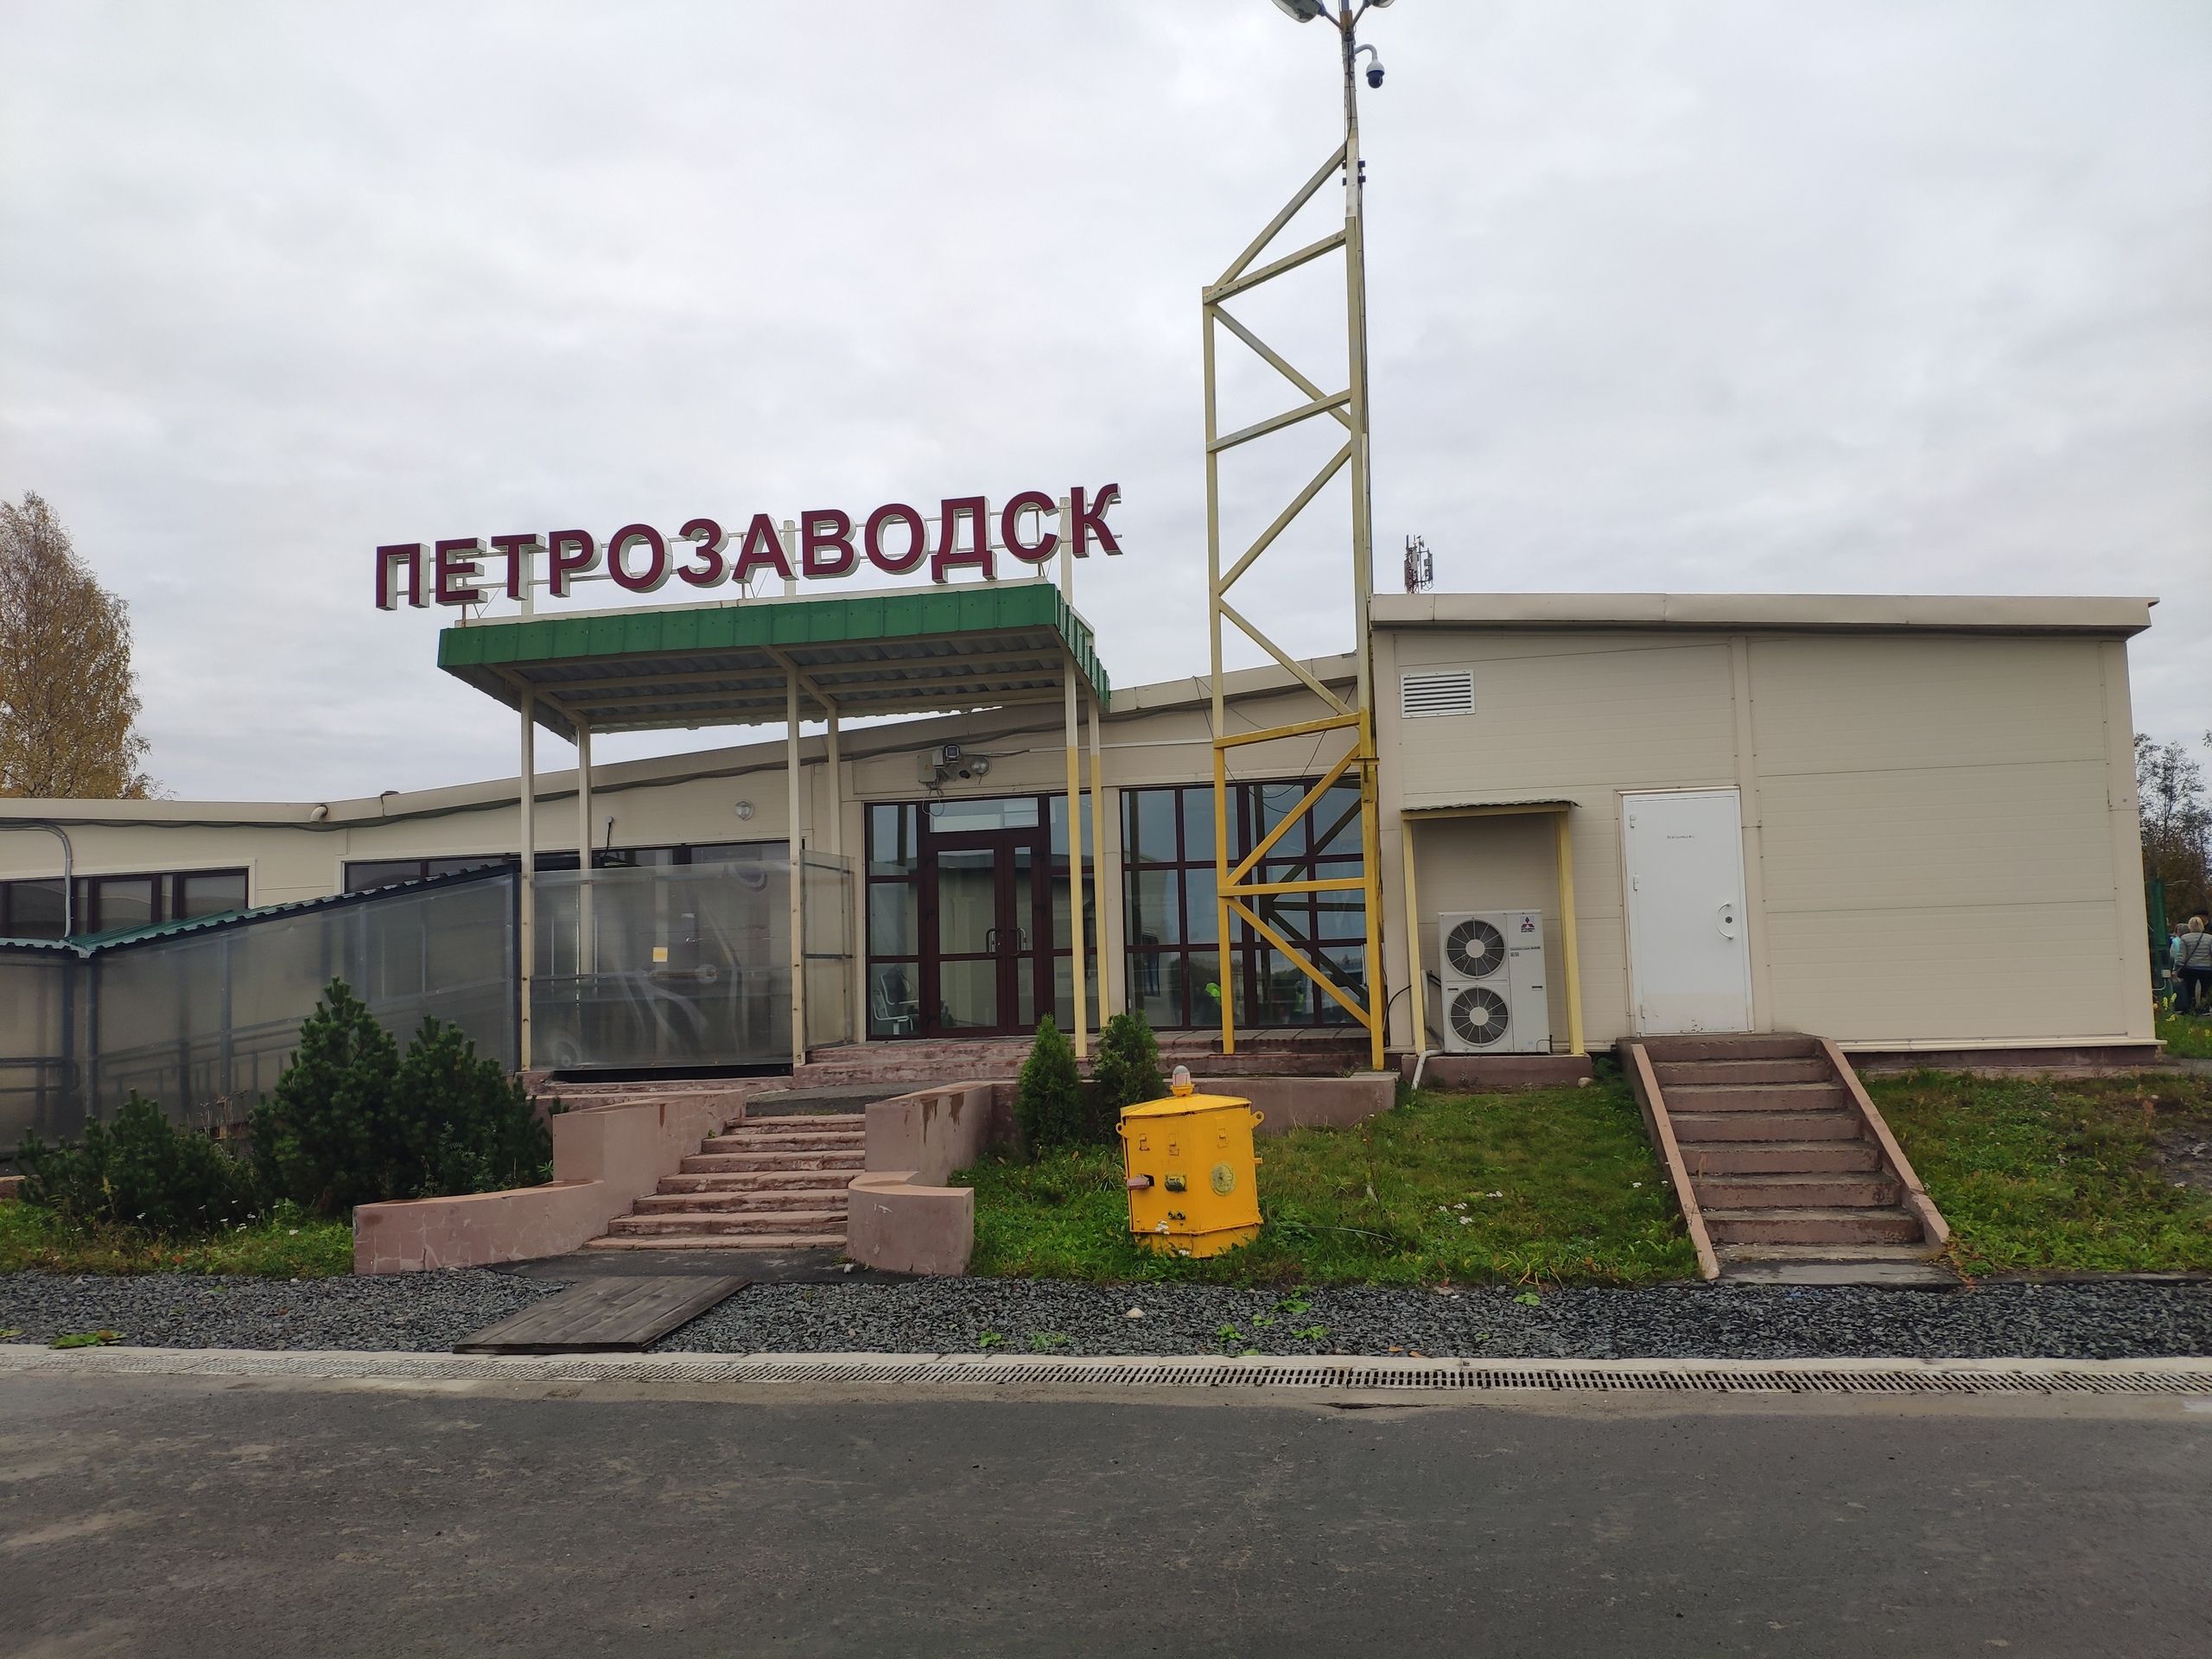 Первый туристический авиарейс из Москвы в Петрозаводск прибудет 16 июня